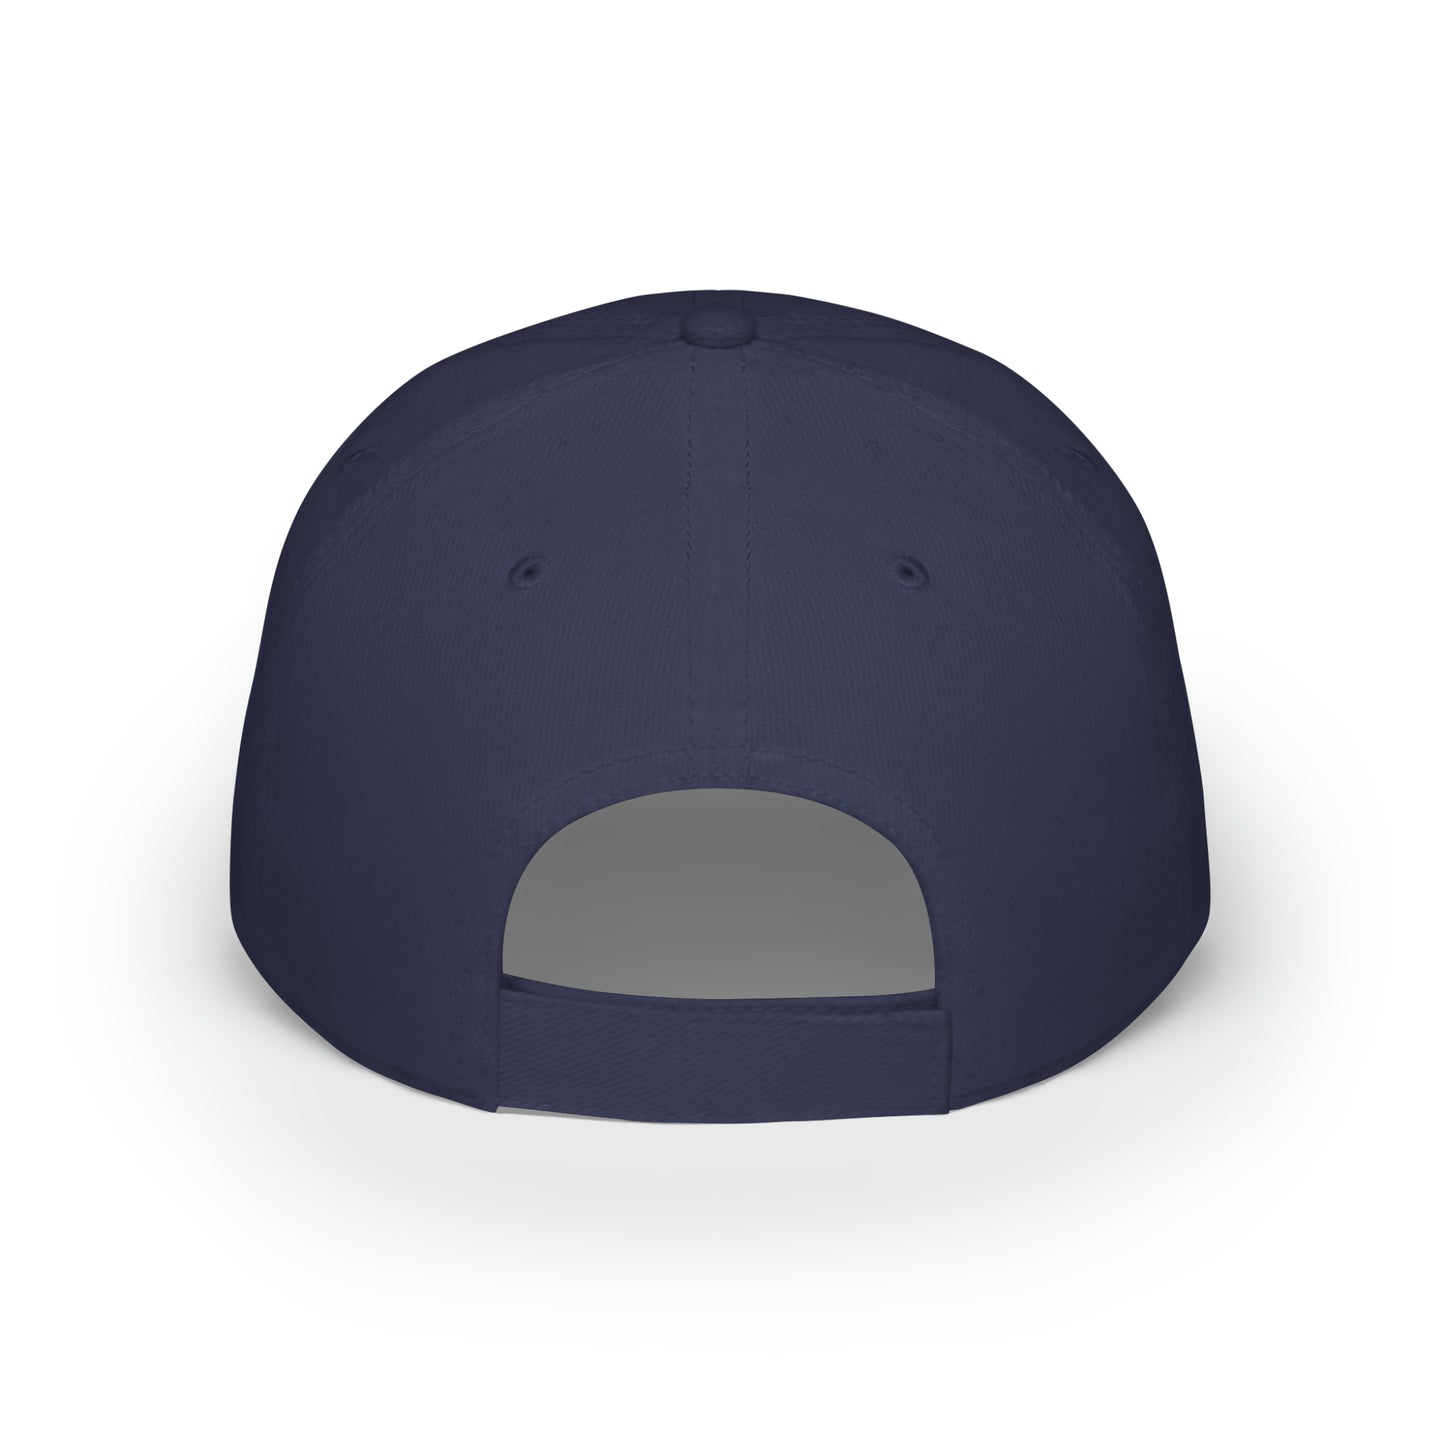 Pickleball Urban Series - Low Profile Baseball Cap